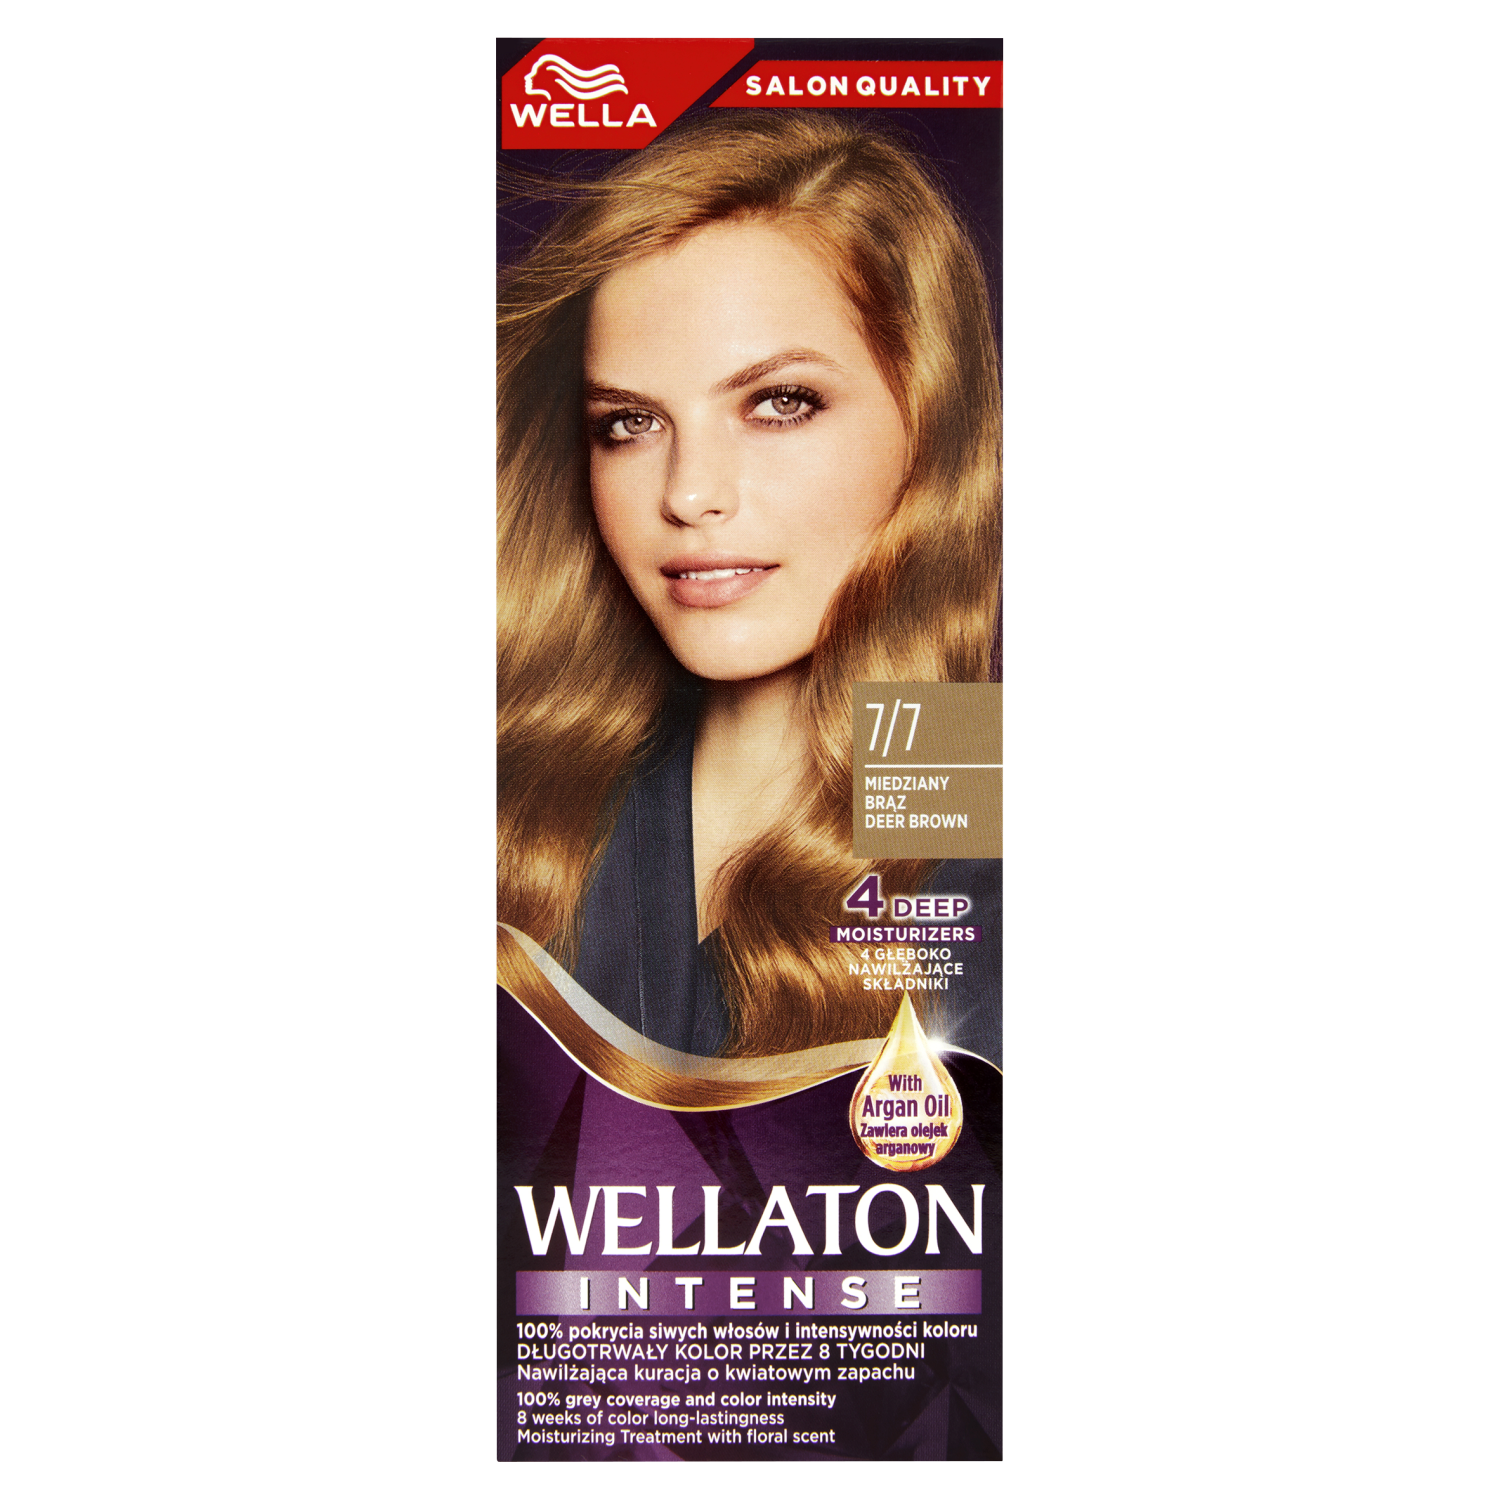 Краска для волос 7/7 медно-коричневый wella wellaton intense Wella Ton Intense, 110 мл крем краска для волос с аргановым маслом 3 7 темно коричневыйкоричневый 100 мл